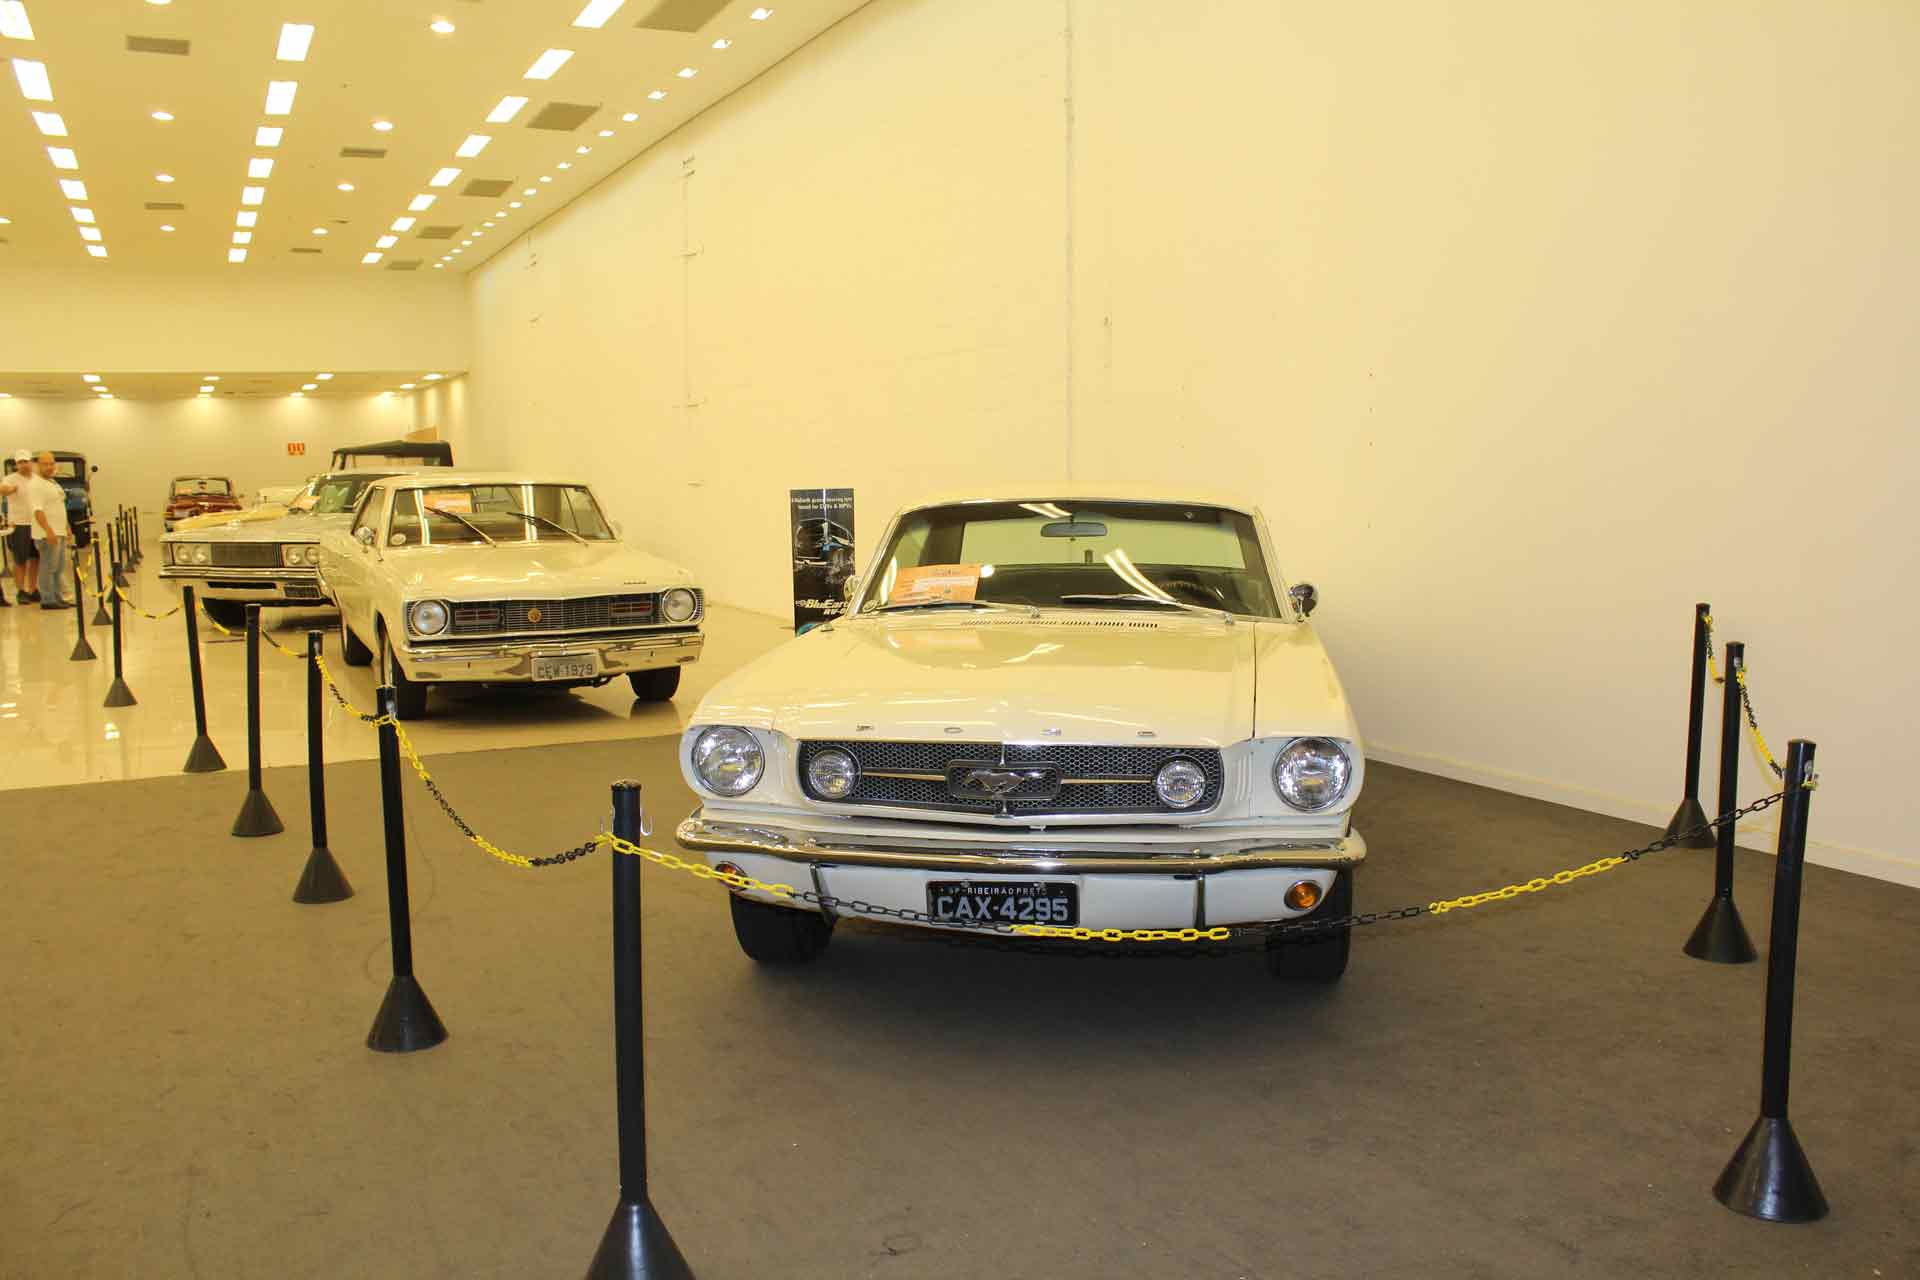 Faixa Branca atrai milhares de visitantes à exposição